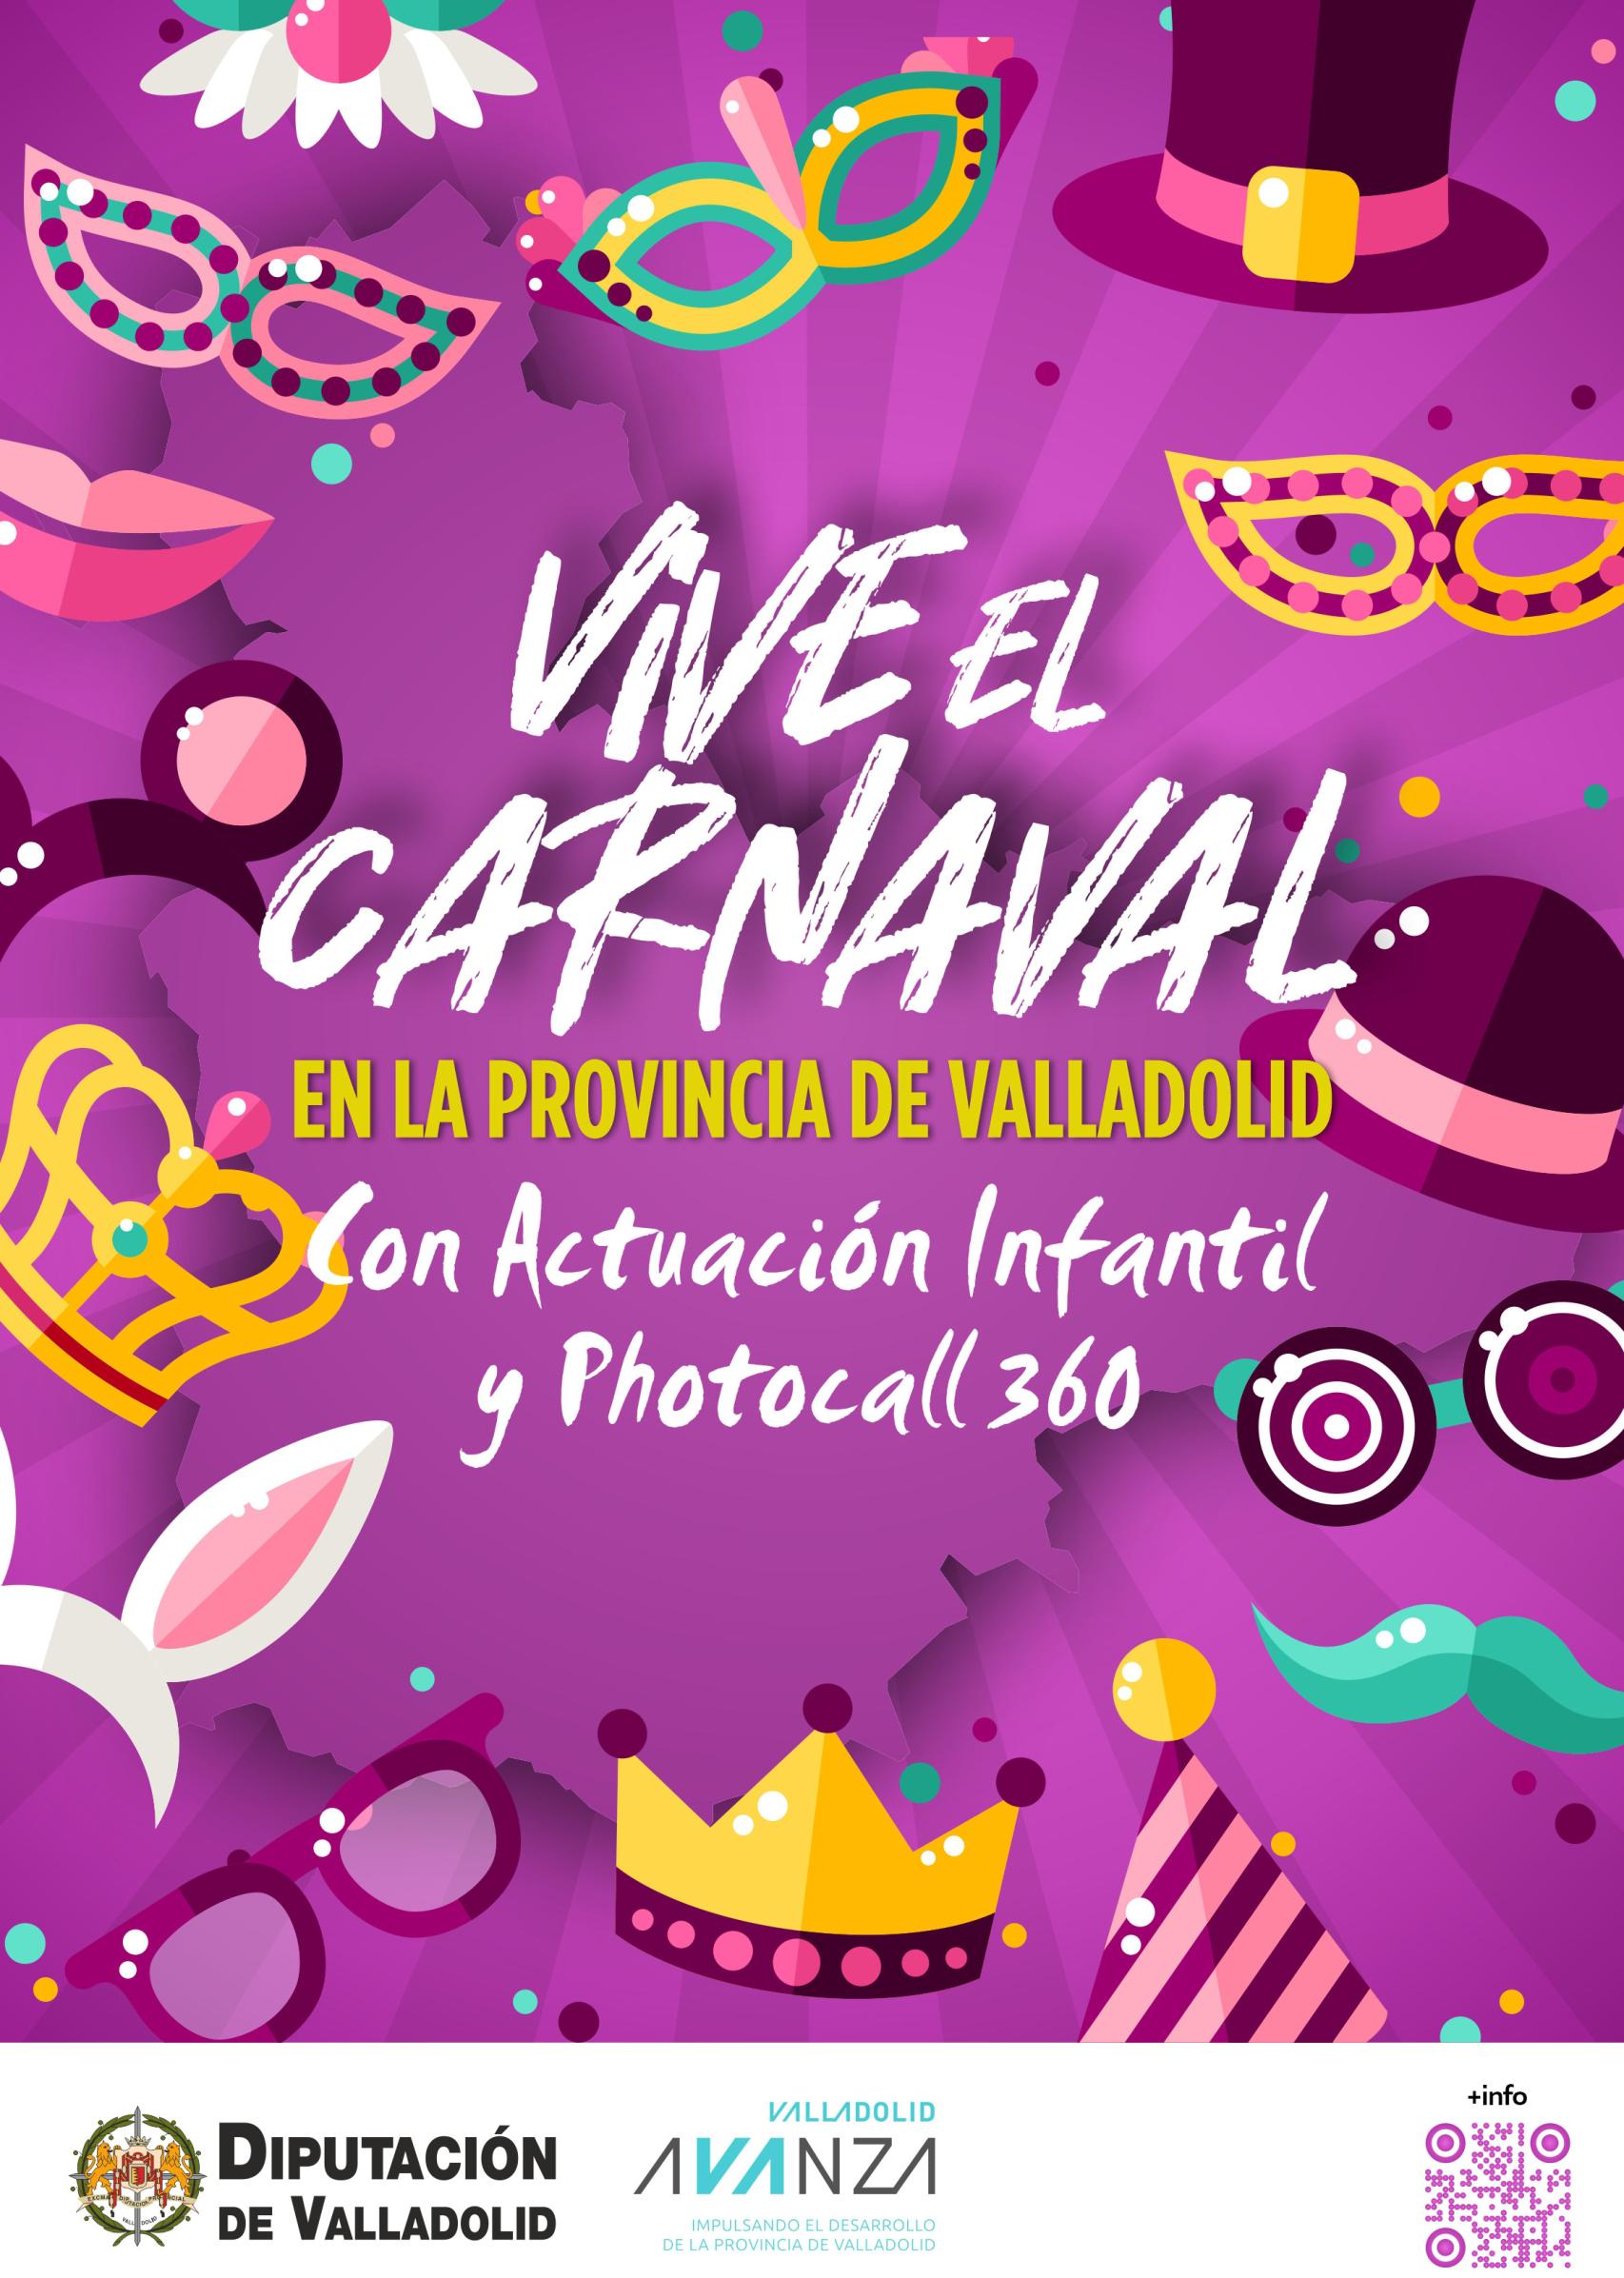 Cartel de Vive el Carnaval en la provincia de Valladolid